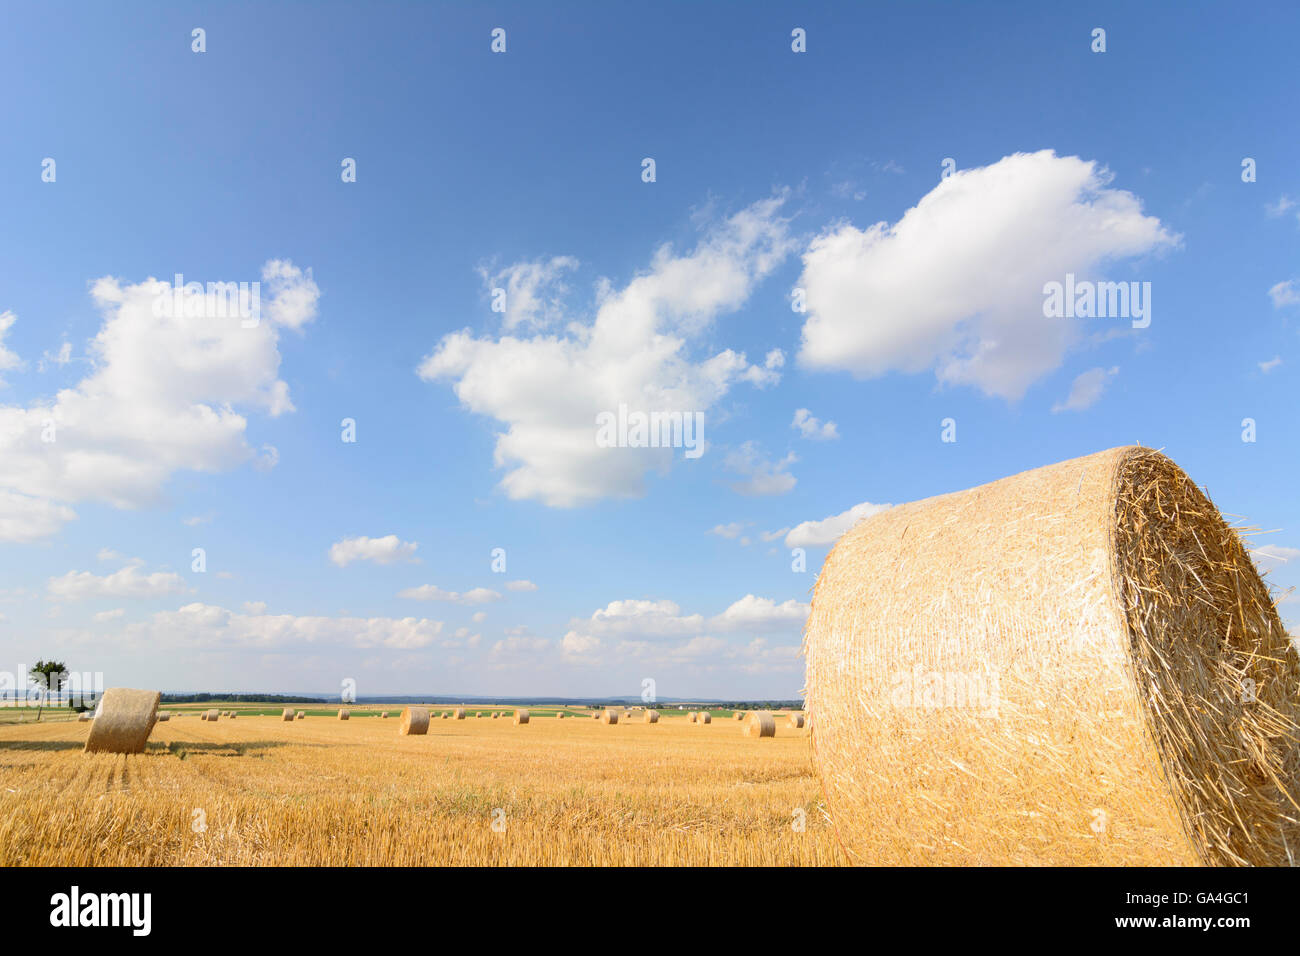 Geras harvested grain fields with straw bales Austria Niederösterreich, Lower Austria Waldviertel Stock Photo